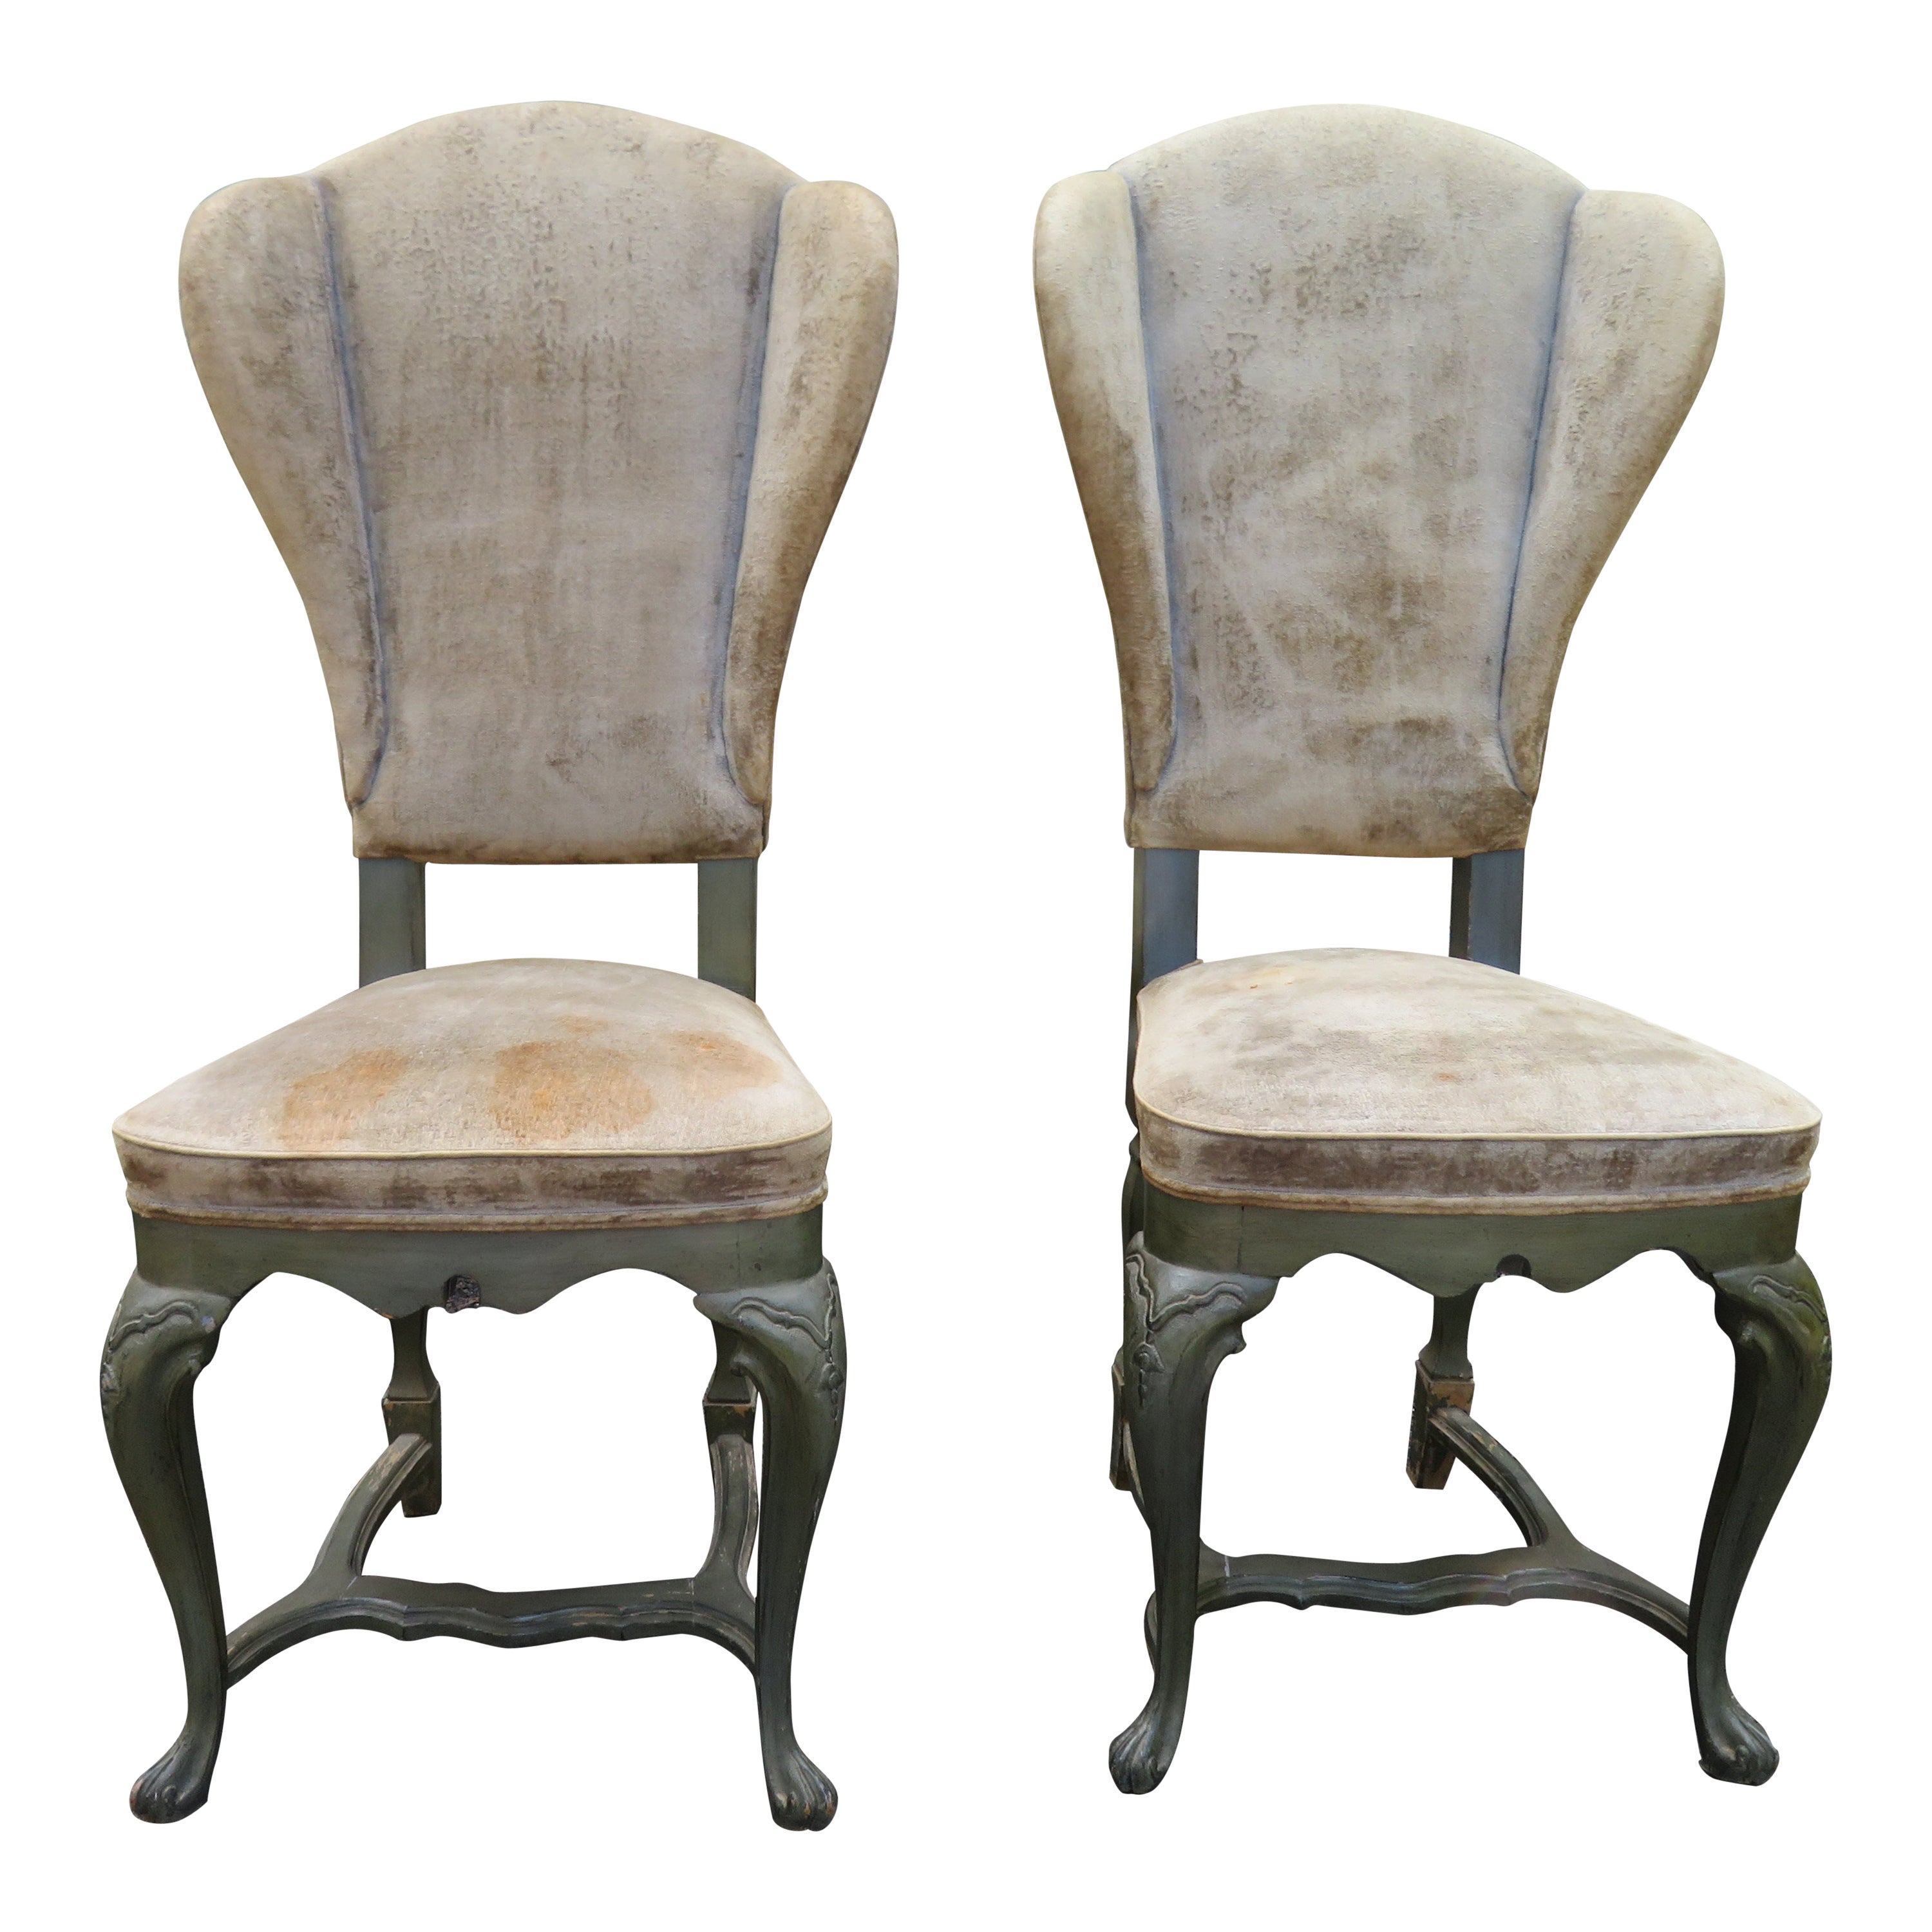 Paire de chaises de salle à manger de style Minton Spidell, de style Regency Rococo italien, à dossier papillon.